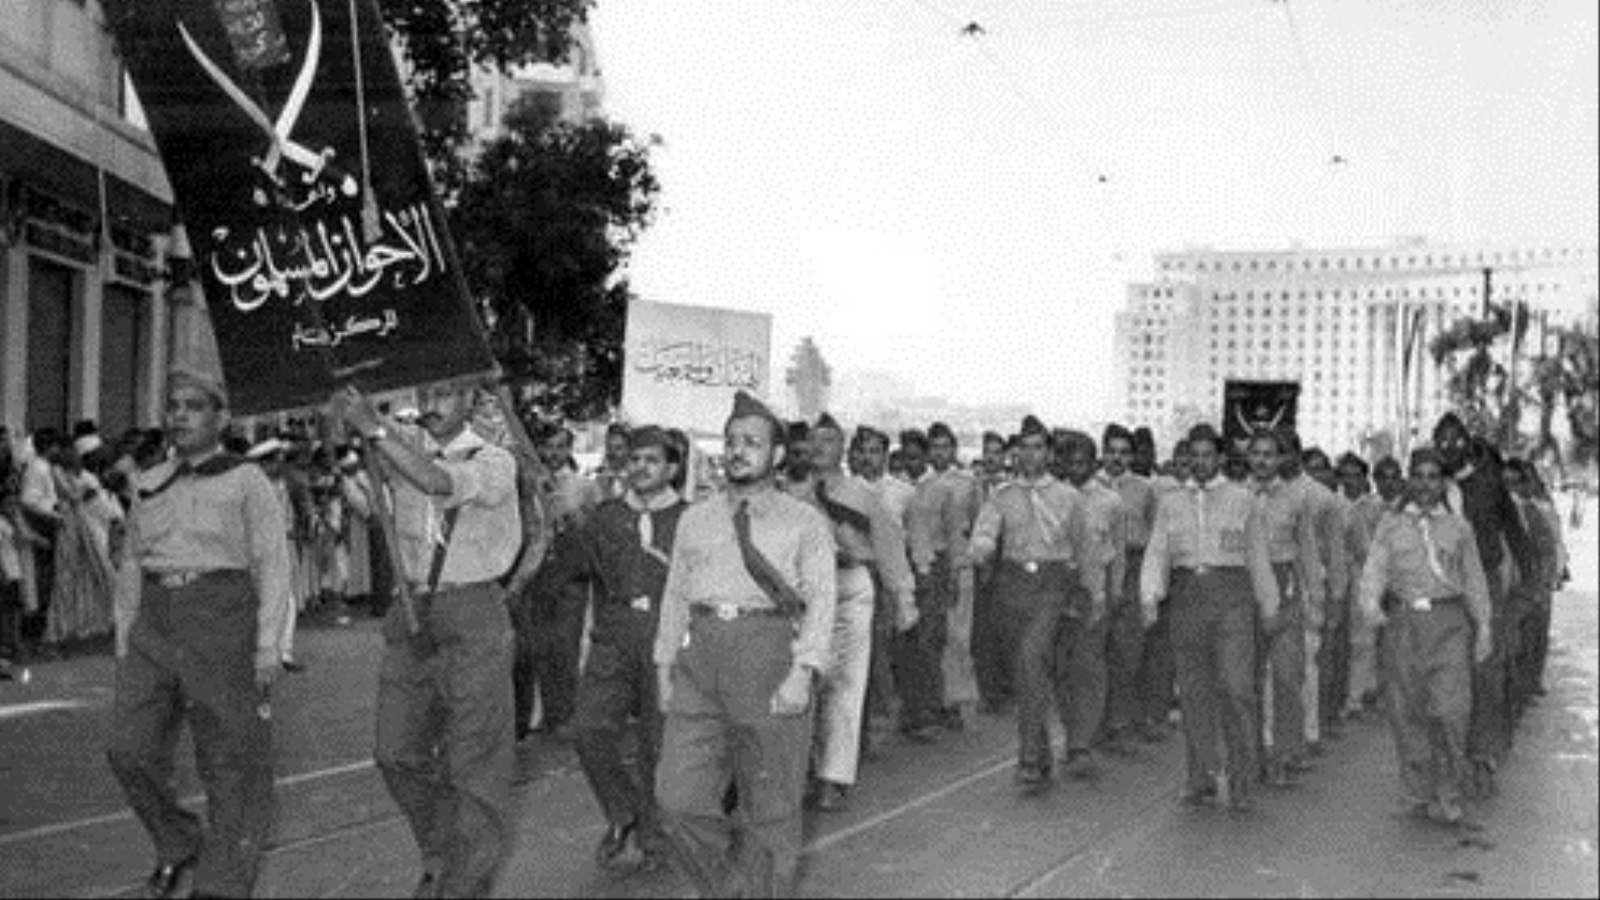 فريق الجوالة التابع للإخوان المسلمين سنة 1952